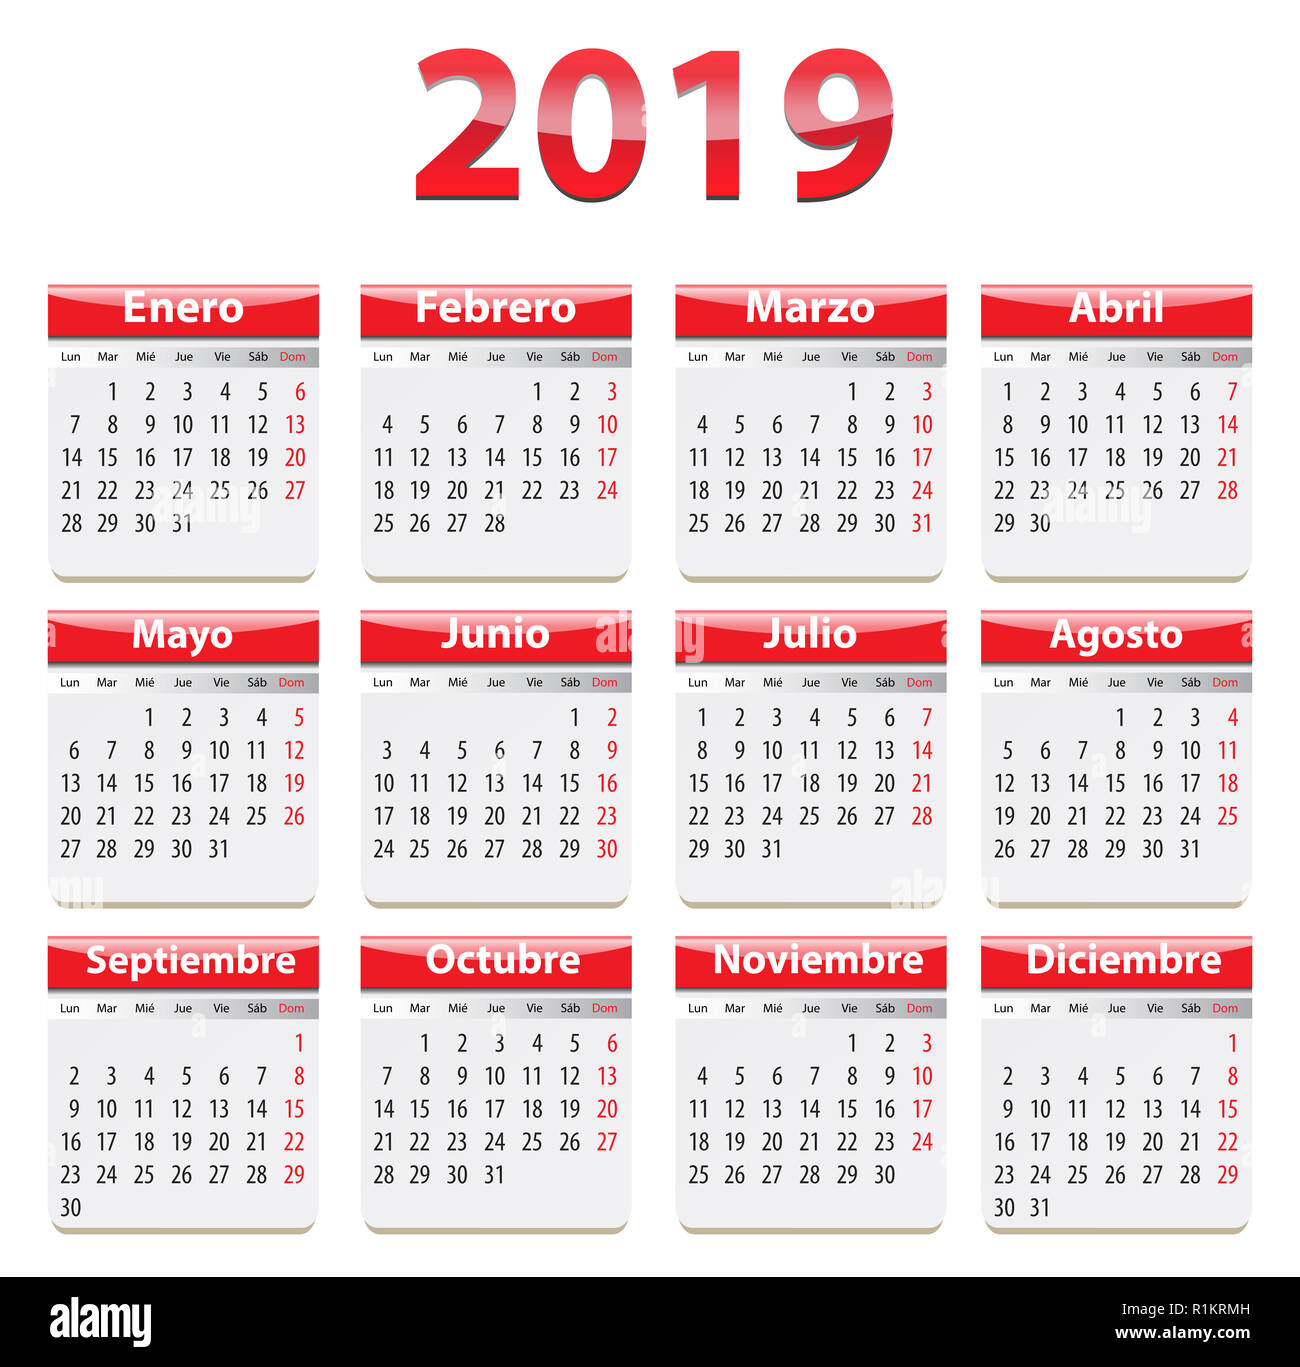 Calendario 2019 immagini e fotografie stock ad alta risoluzione - Alamy